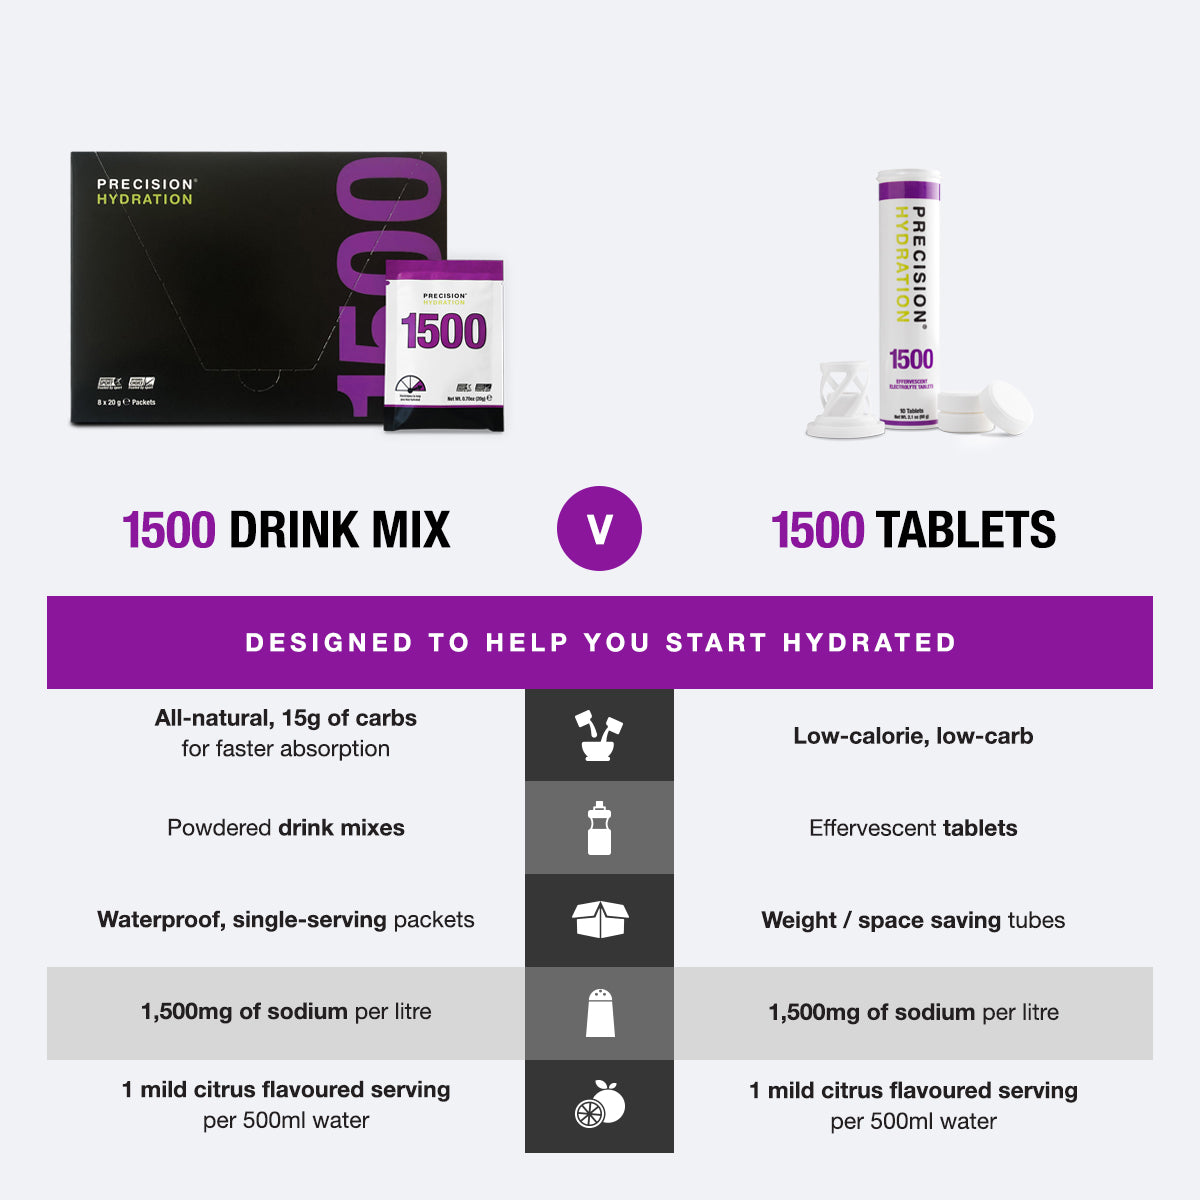 PH 1500 low-calorie tablets